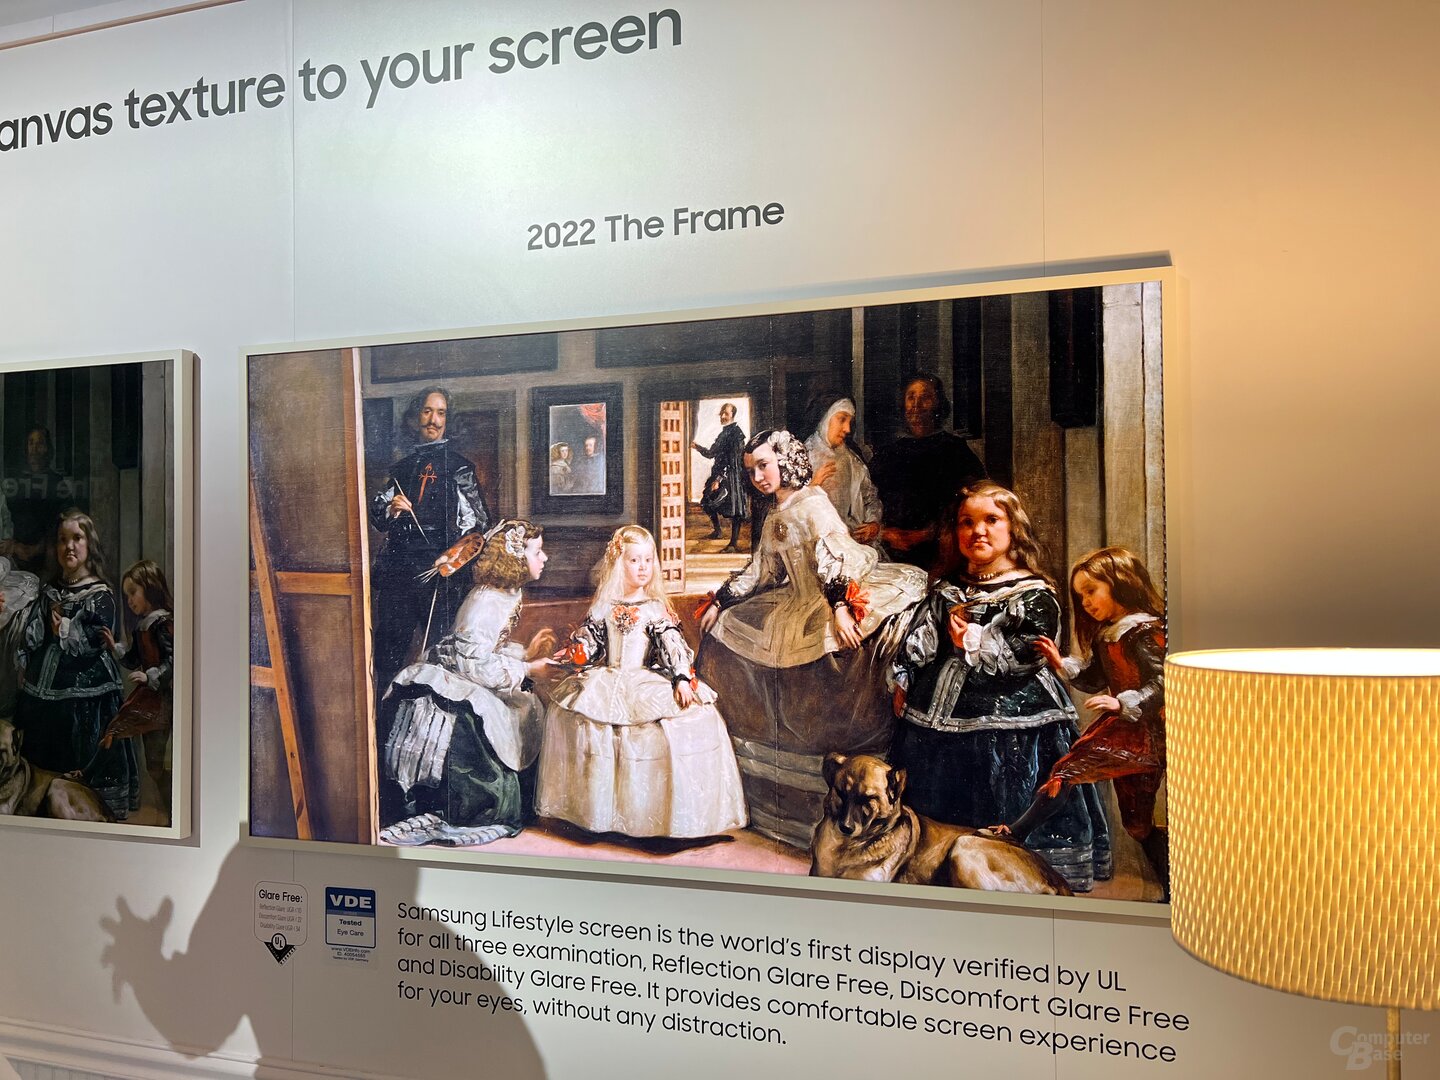 The Frame 2022